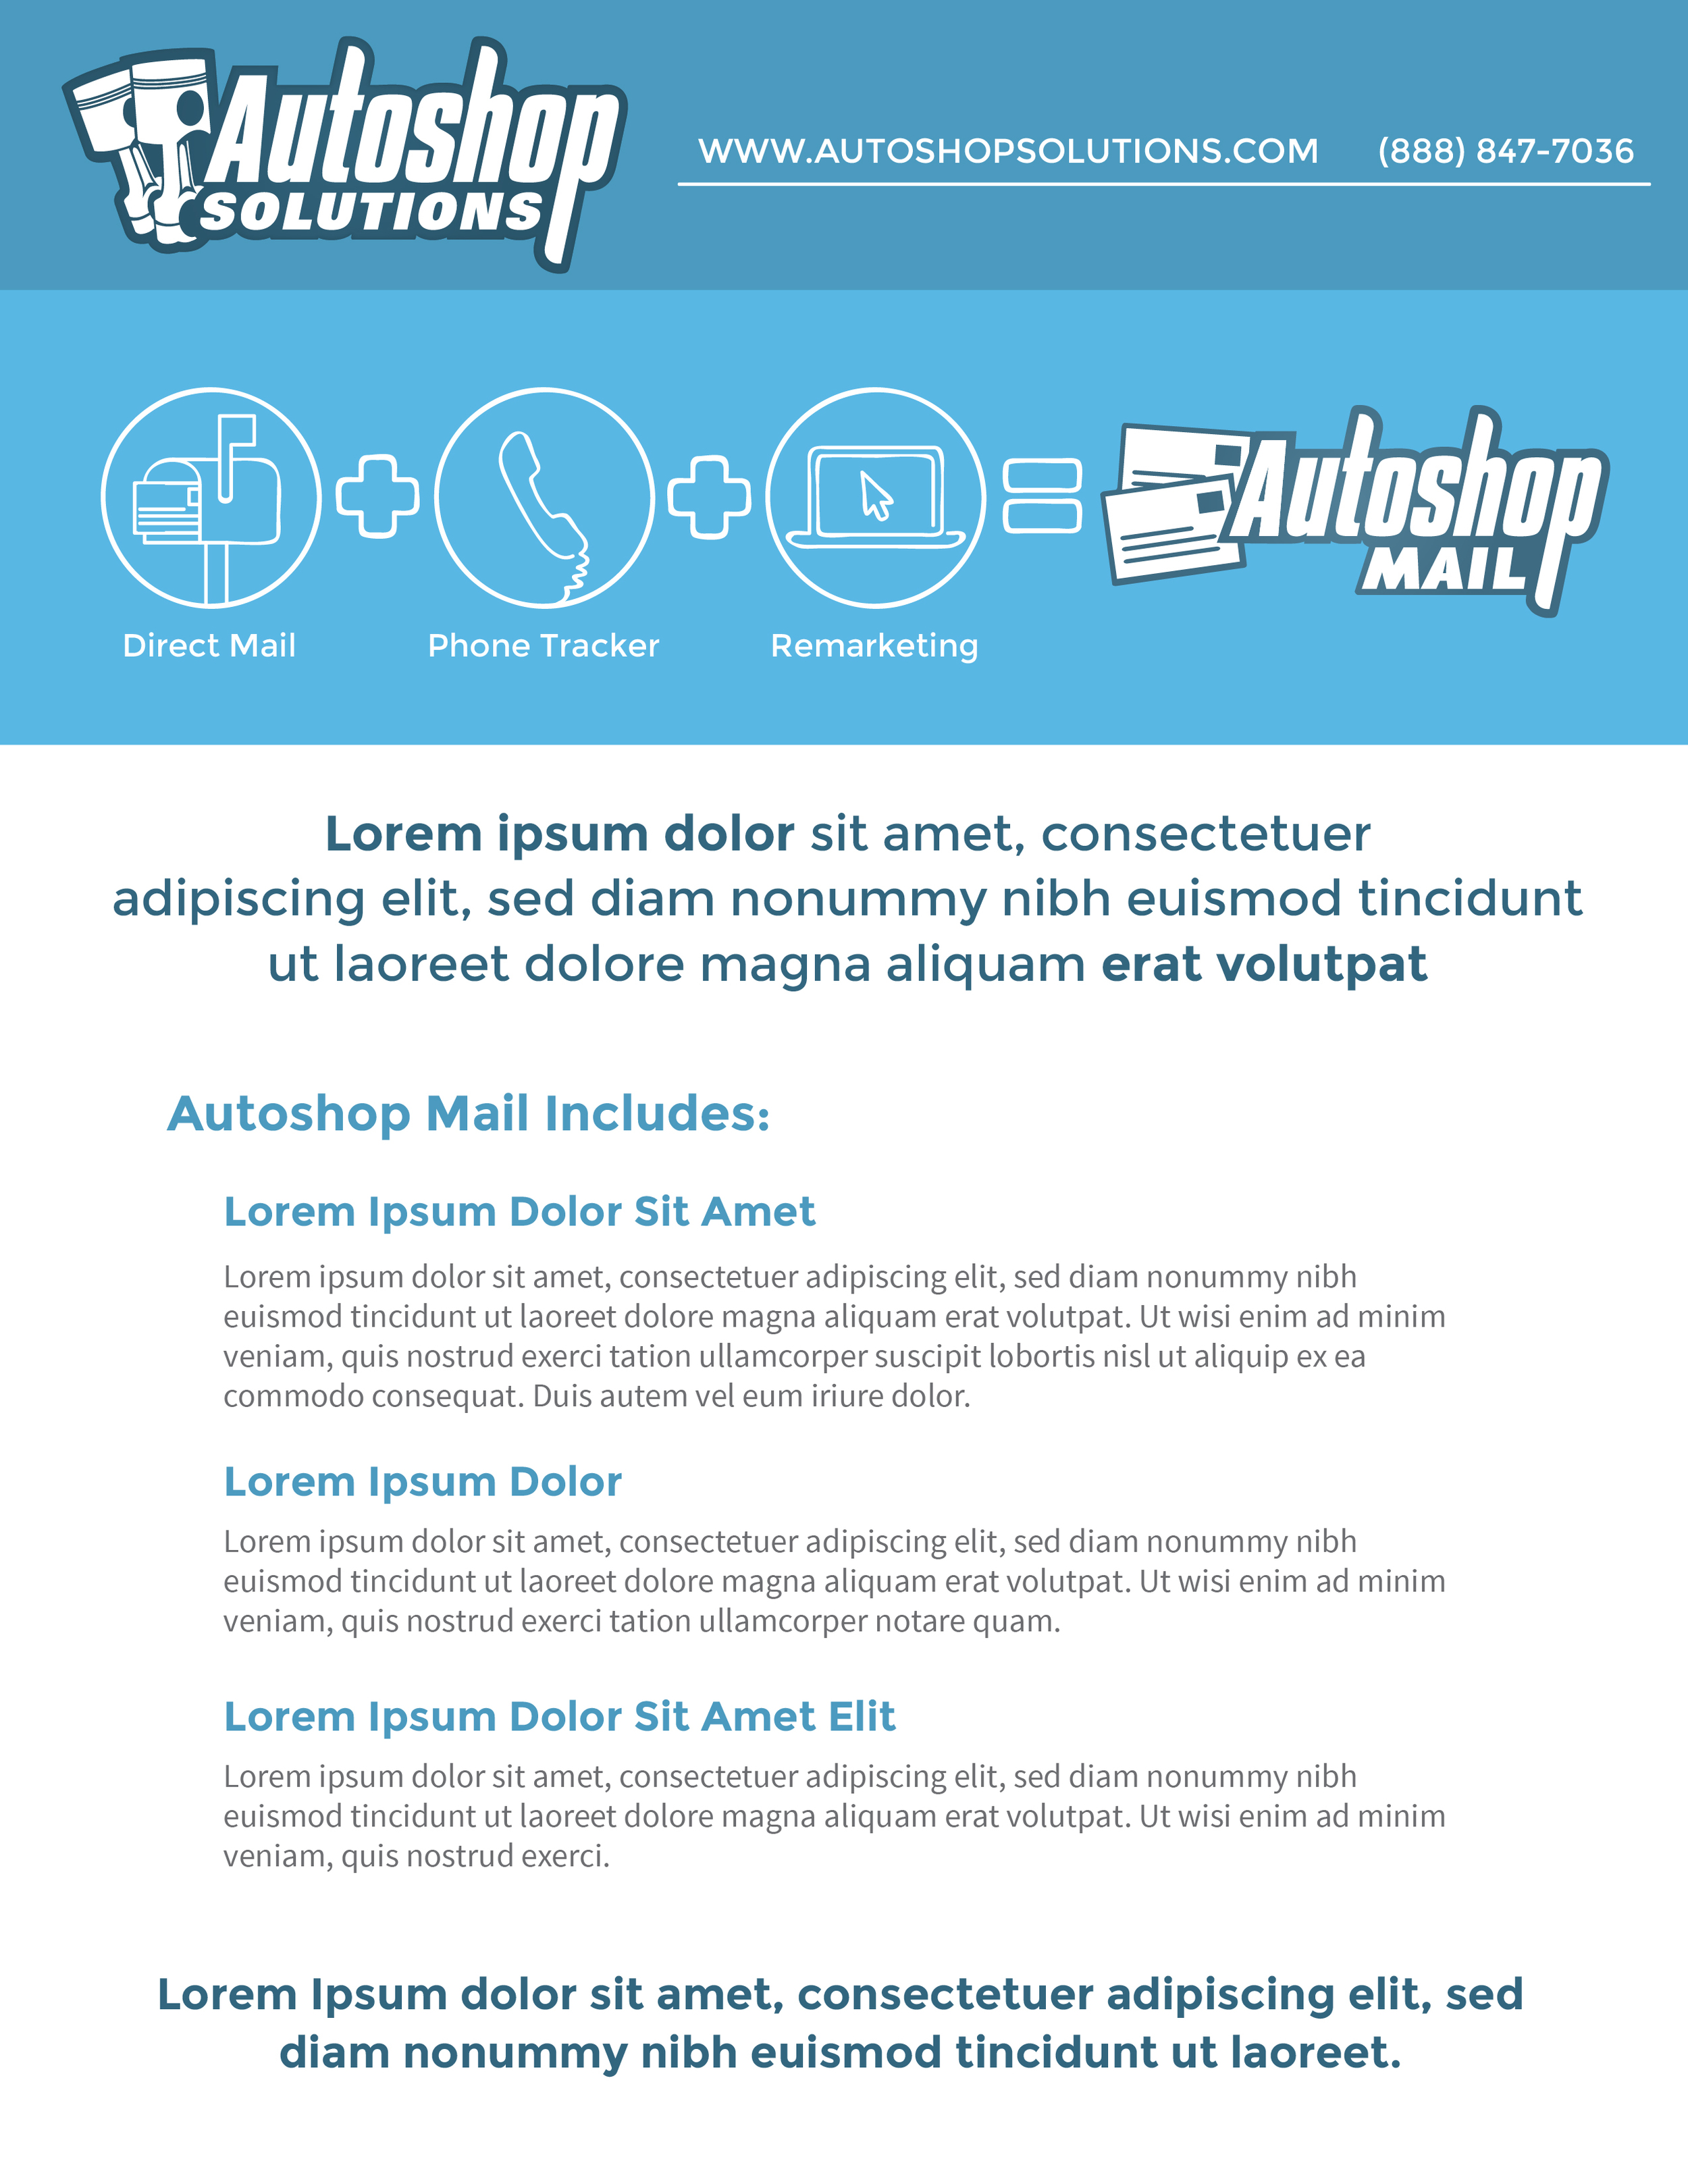 Autoshop Solutions Inc: Autoshop Mail PDF - Page 1